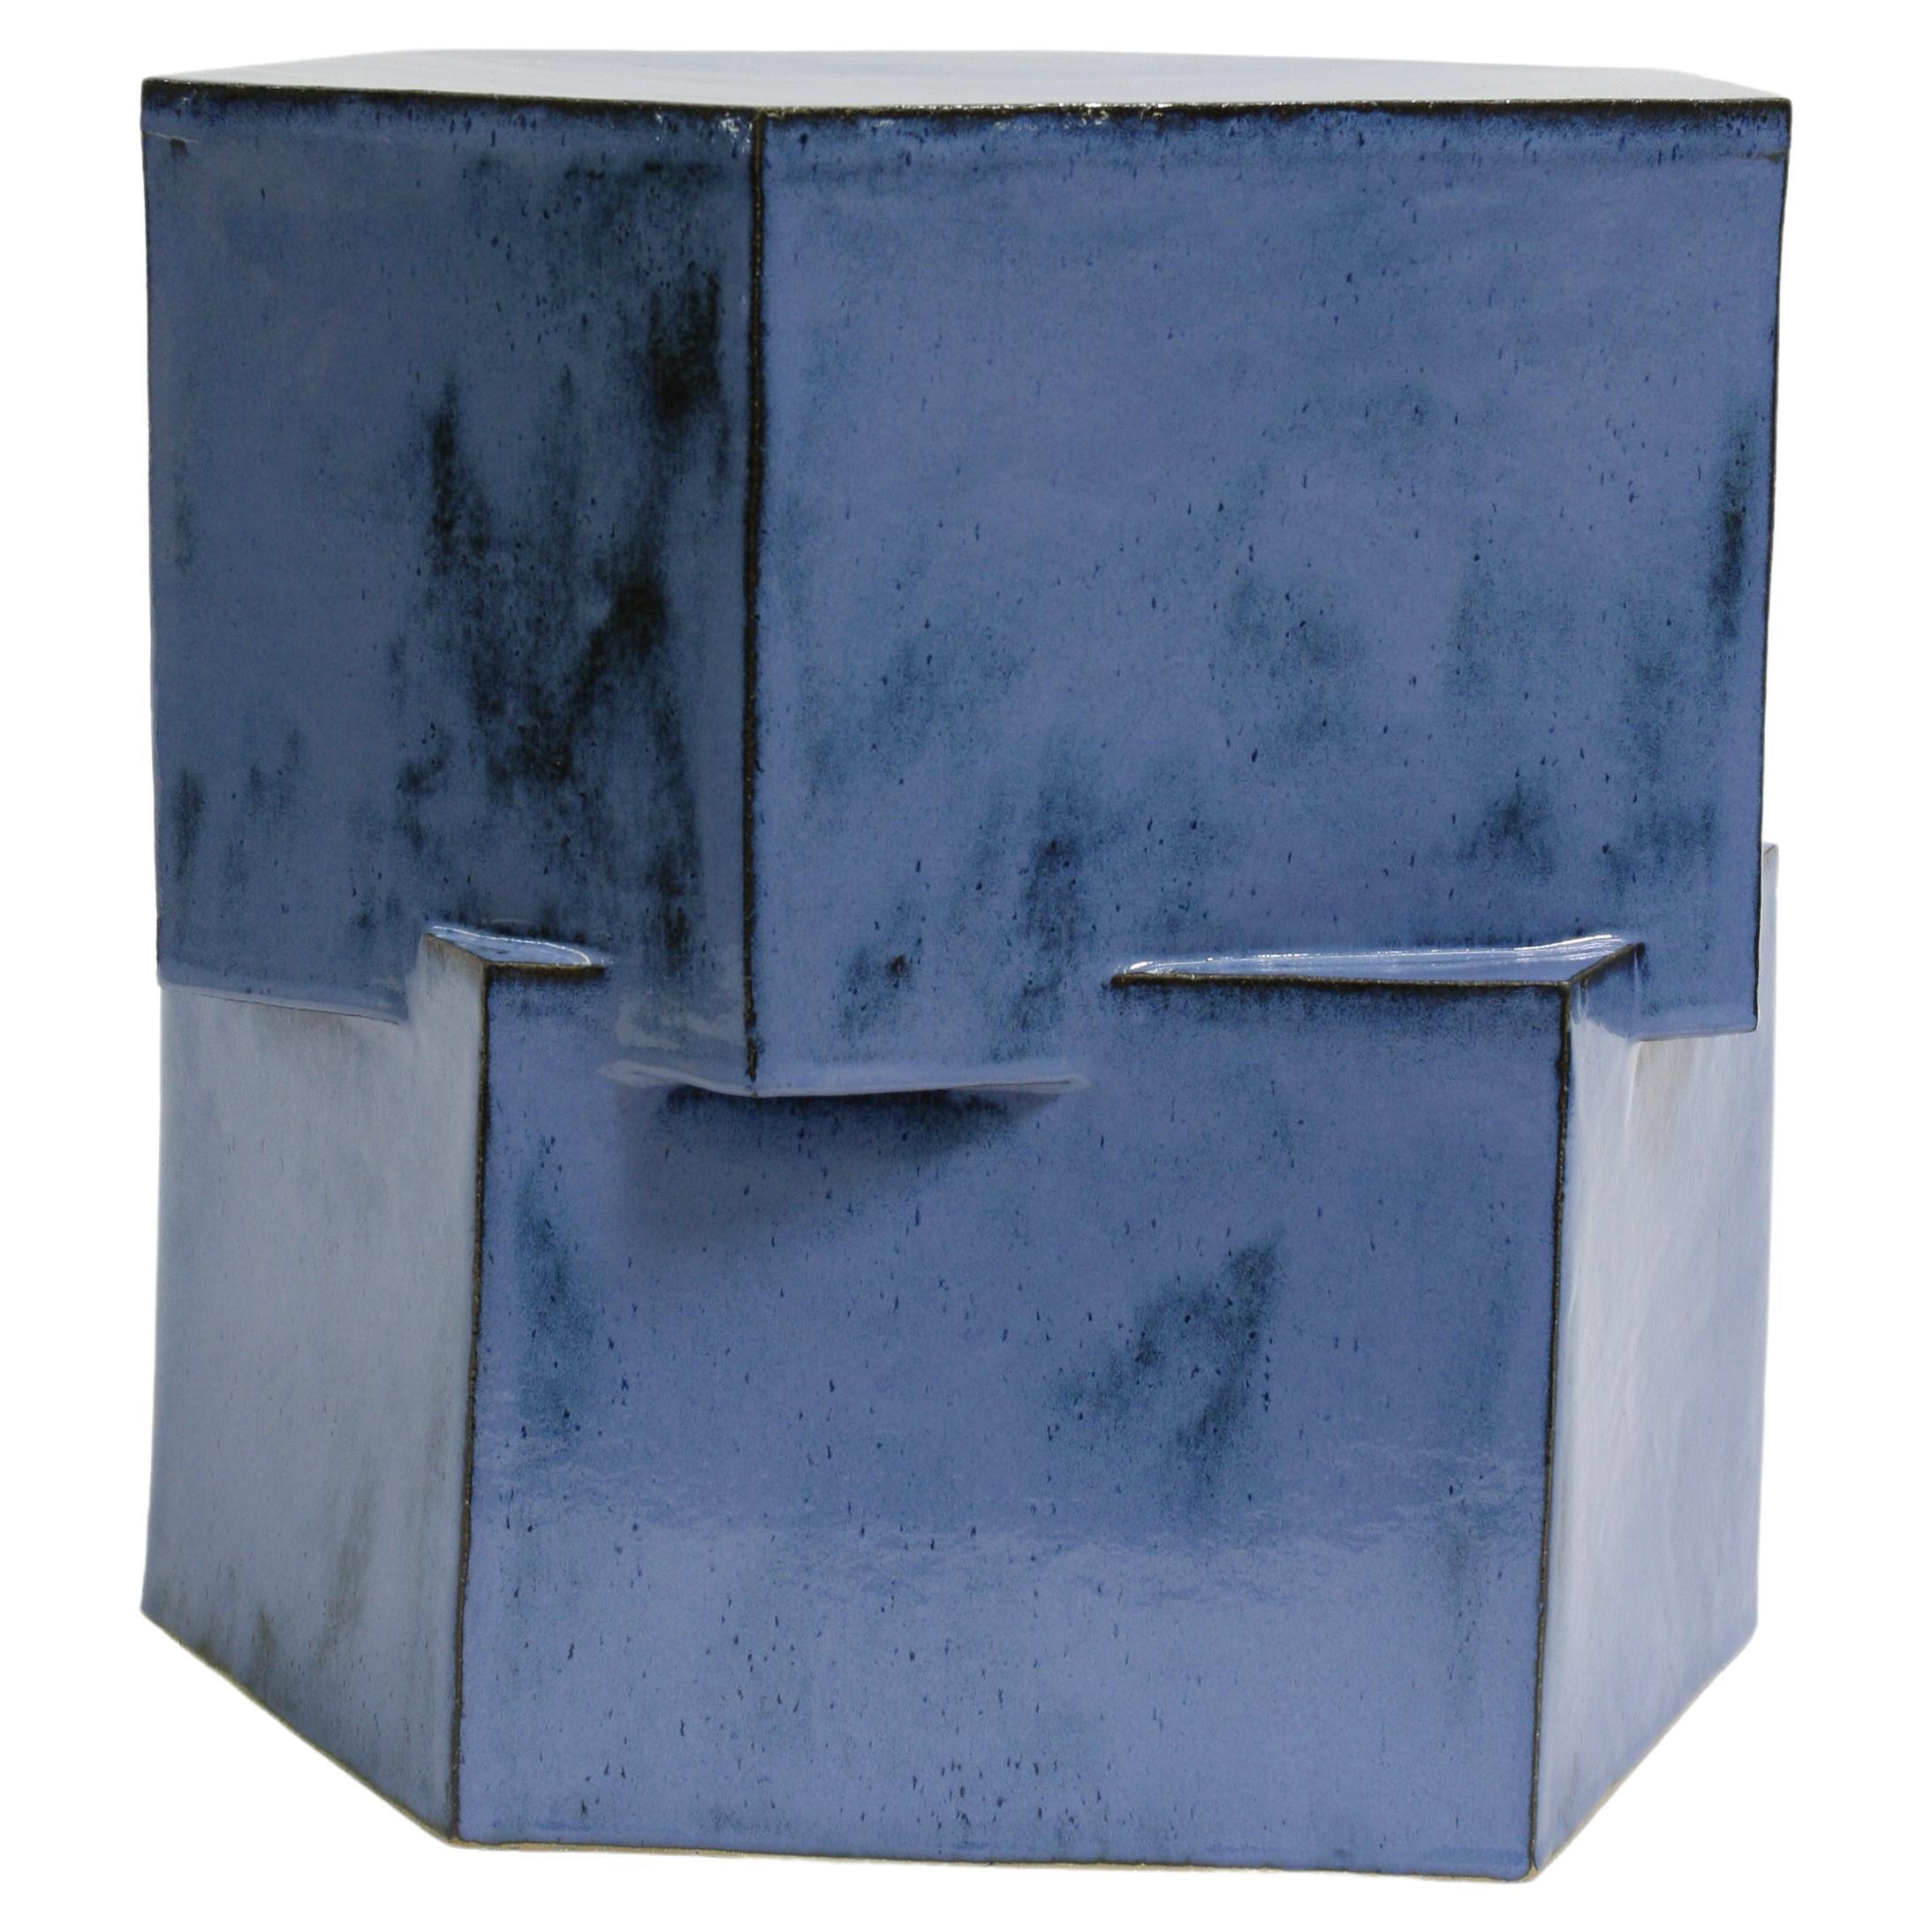 Double Tier Ceramic Hex Side Table in Mottled Blue by Bzippy